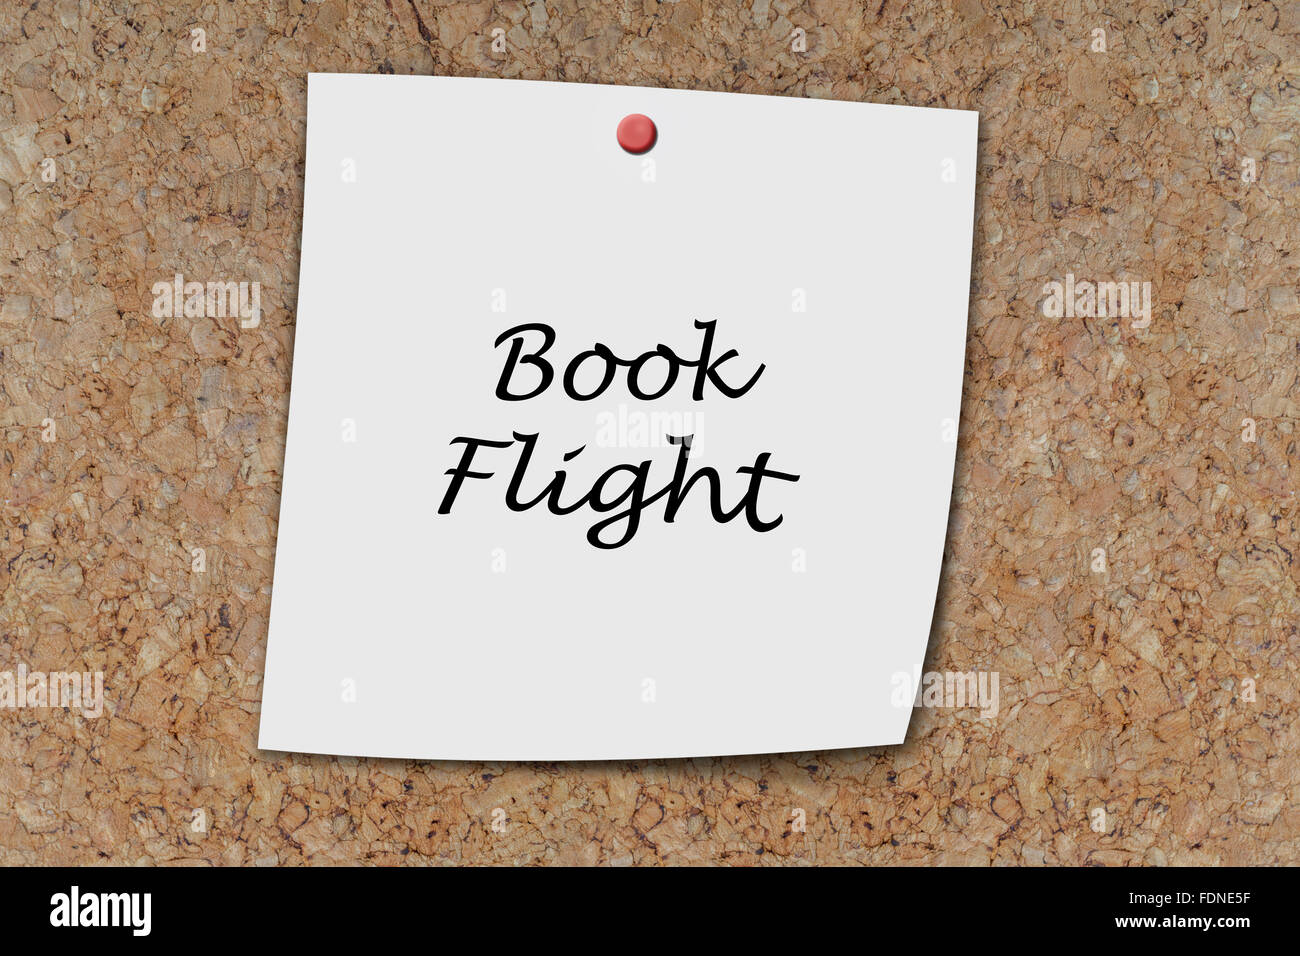 Book FLight written on a memo pinned on a cork board Stock Photo